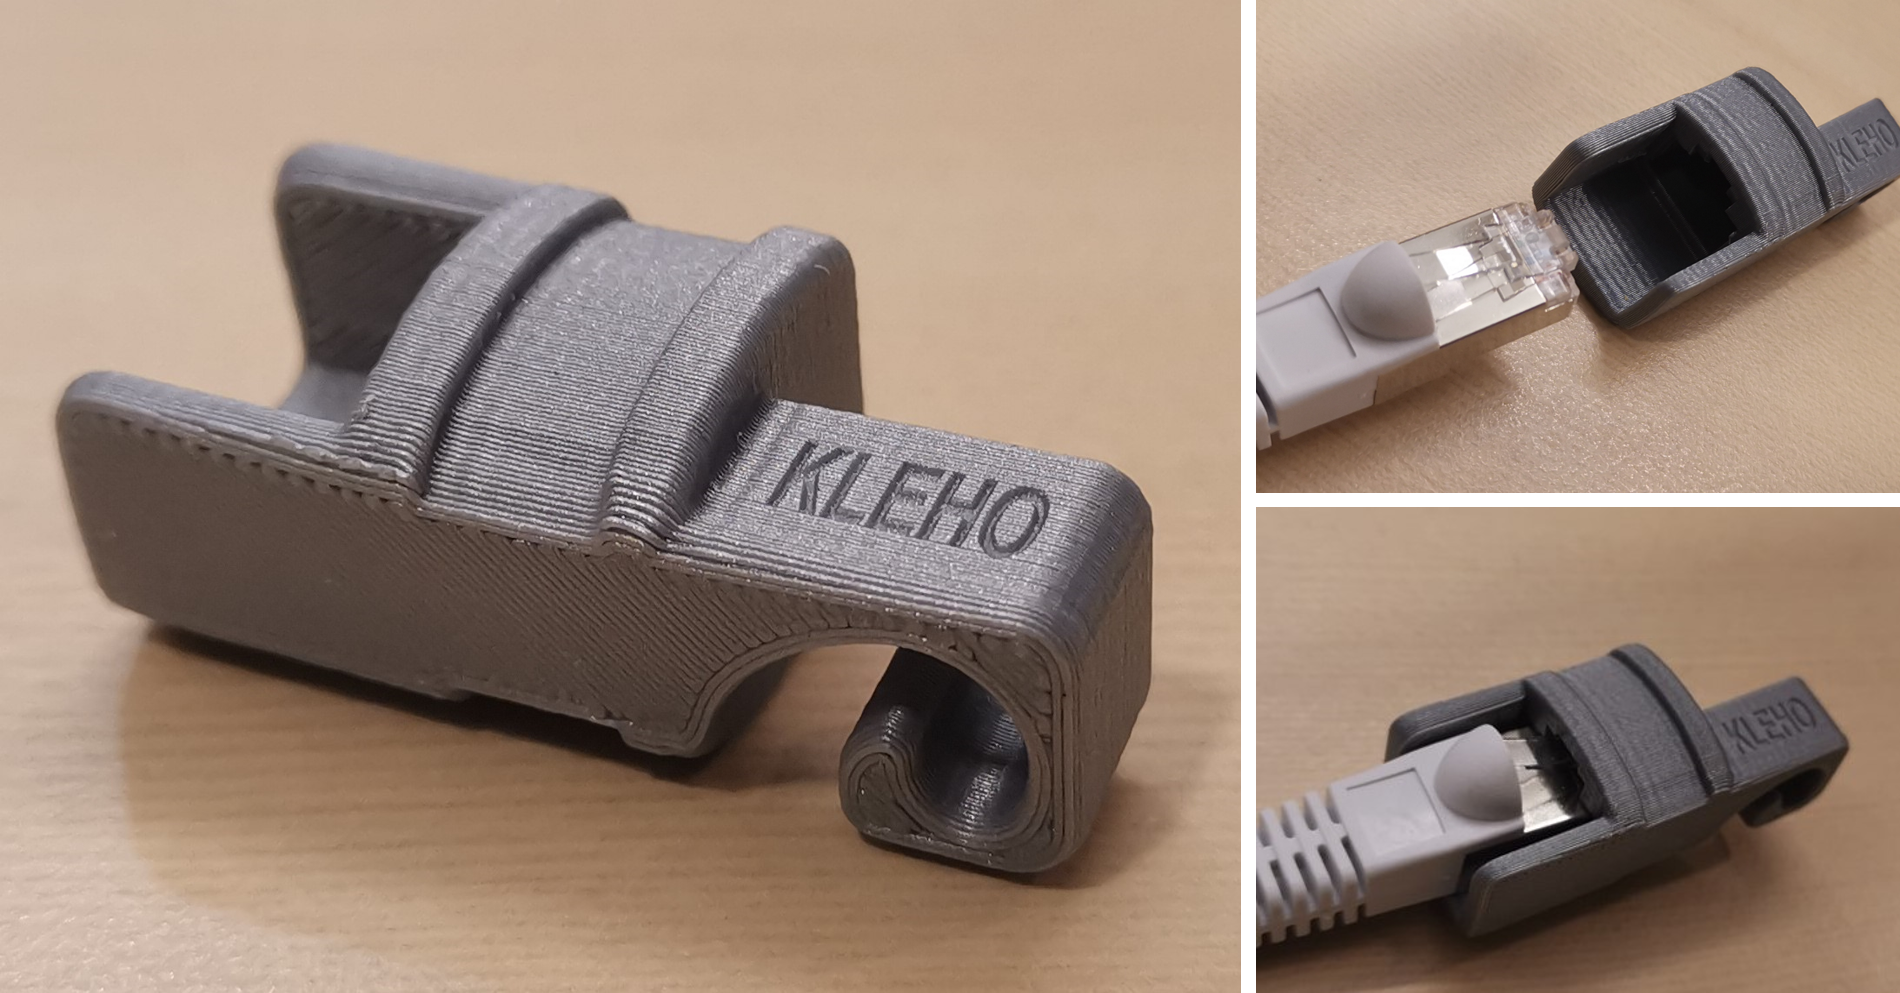 KLEHO RJC-1 / PROTECTIVE CAP FOR RJ45 NETWORK CONNECTORS